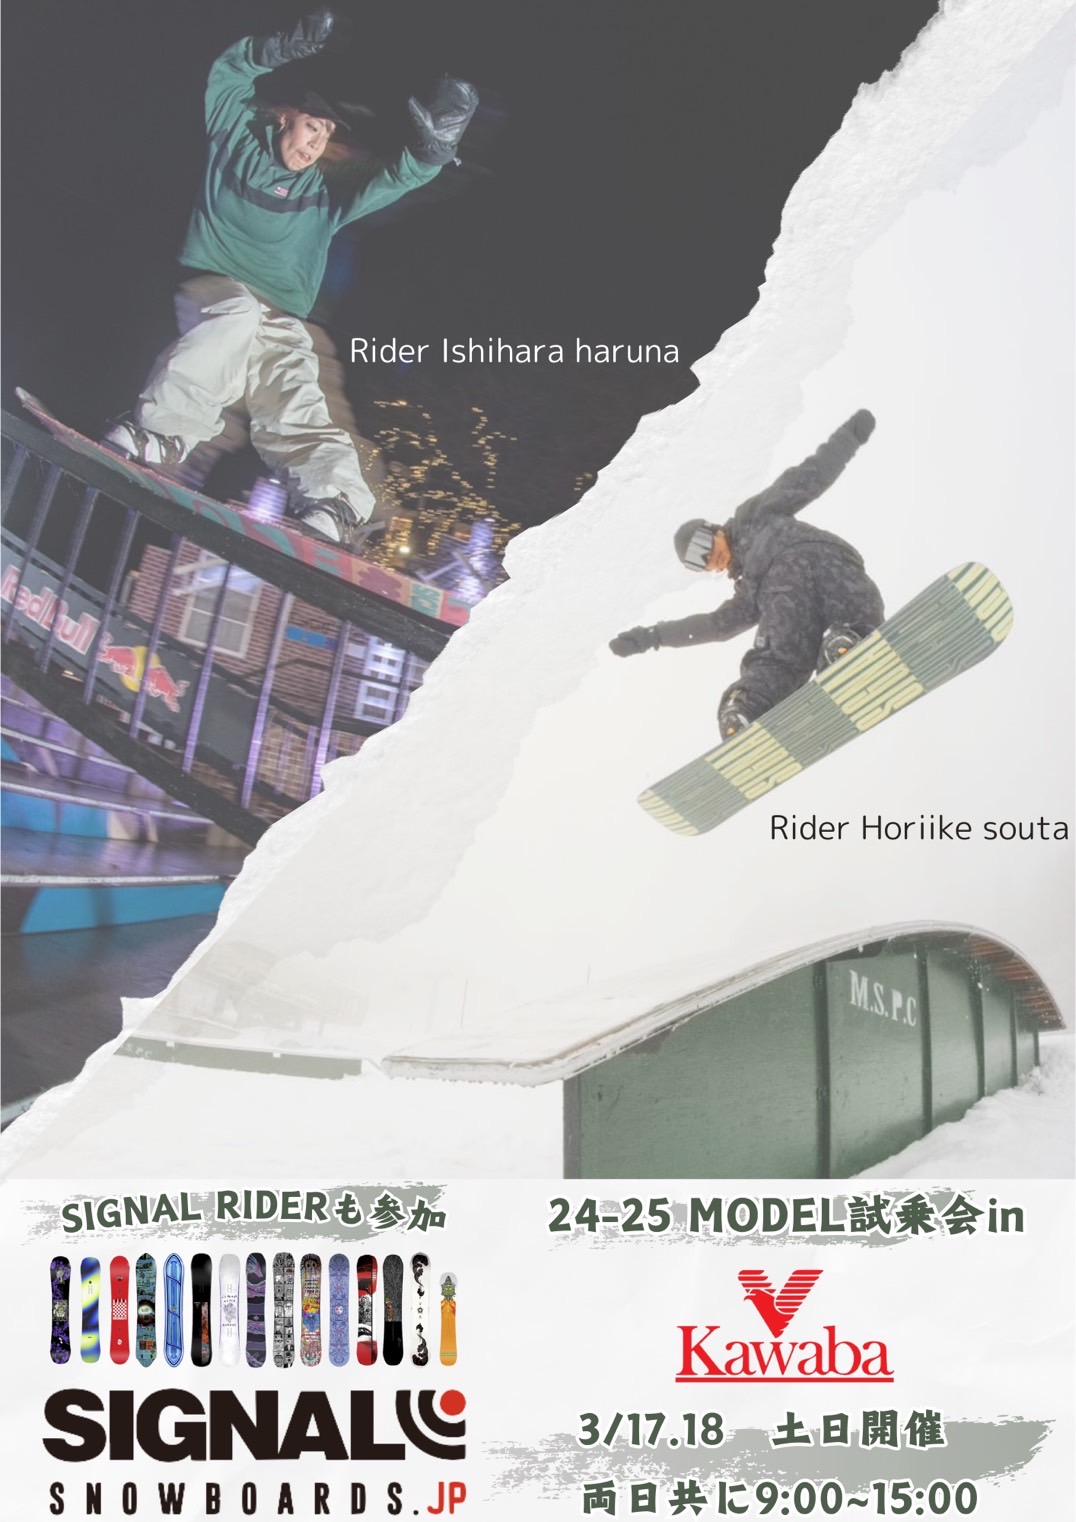 3/16.17「UKIYO SNOWBOARDS」「SIGNAL SNOWBOARDS」試乗会開催